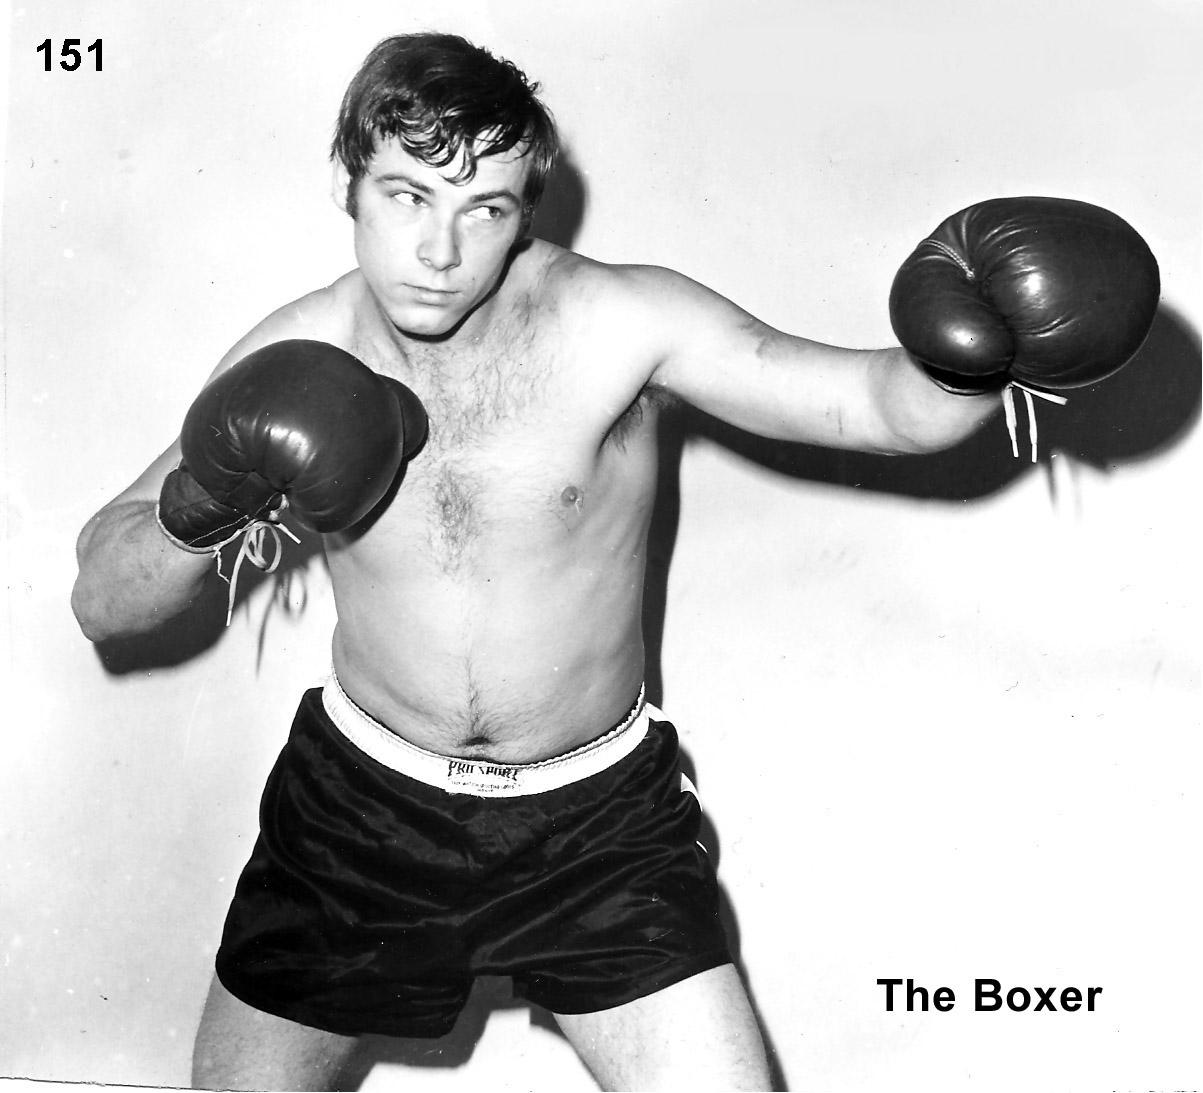 No. 151 - The Boxer